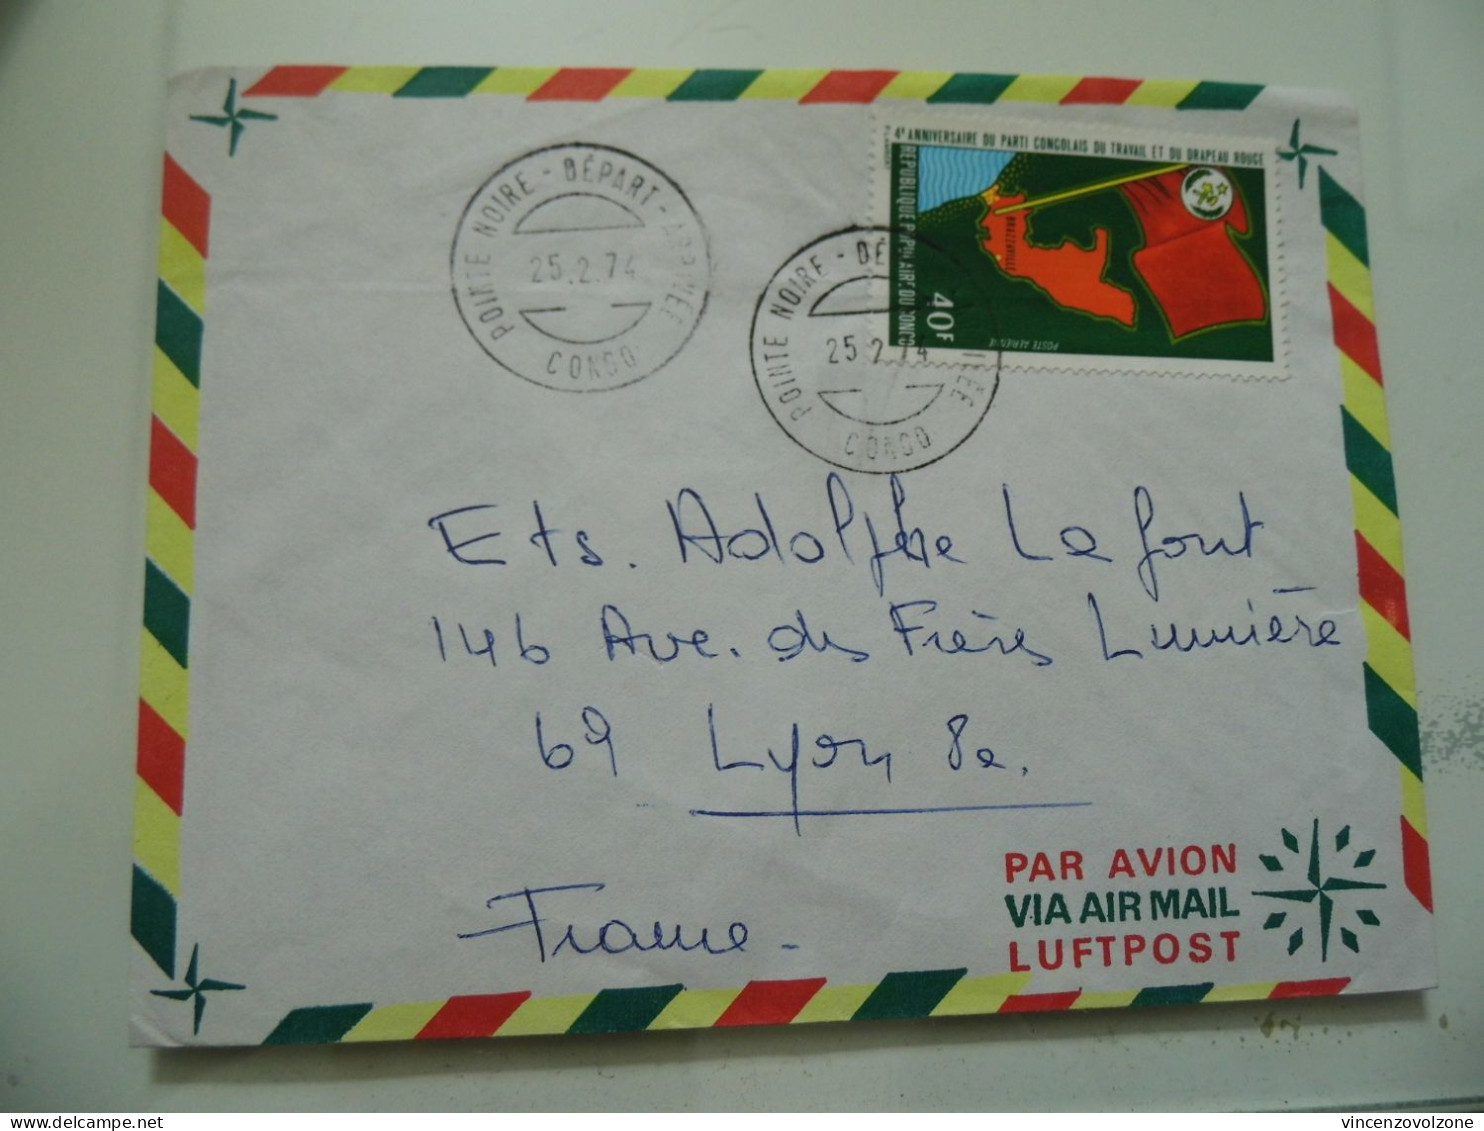 Busta Viaggiata  Per La Francia  1974 - Lettres & Documents